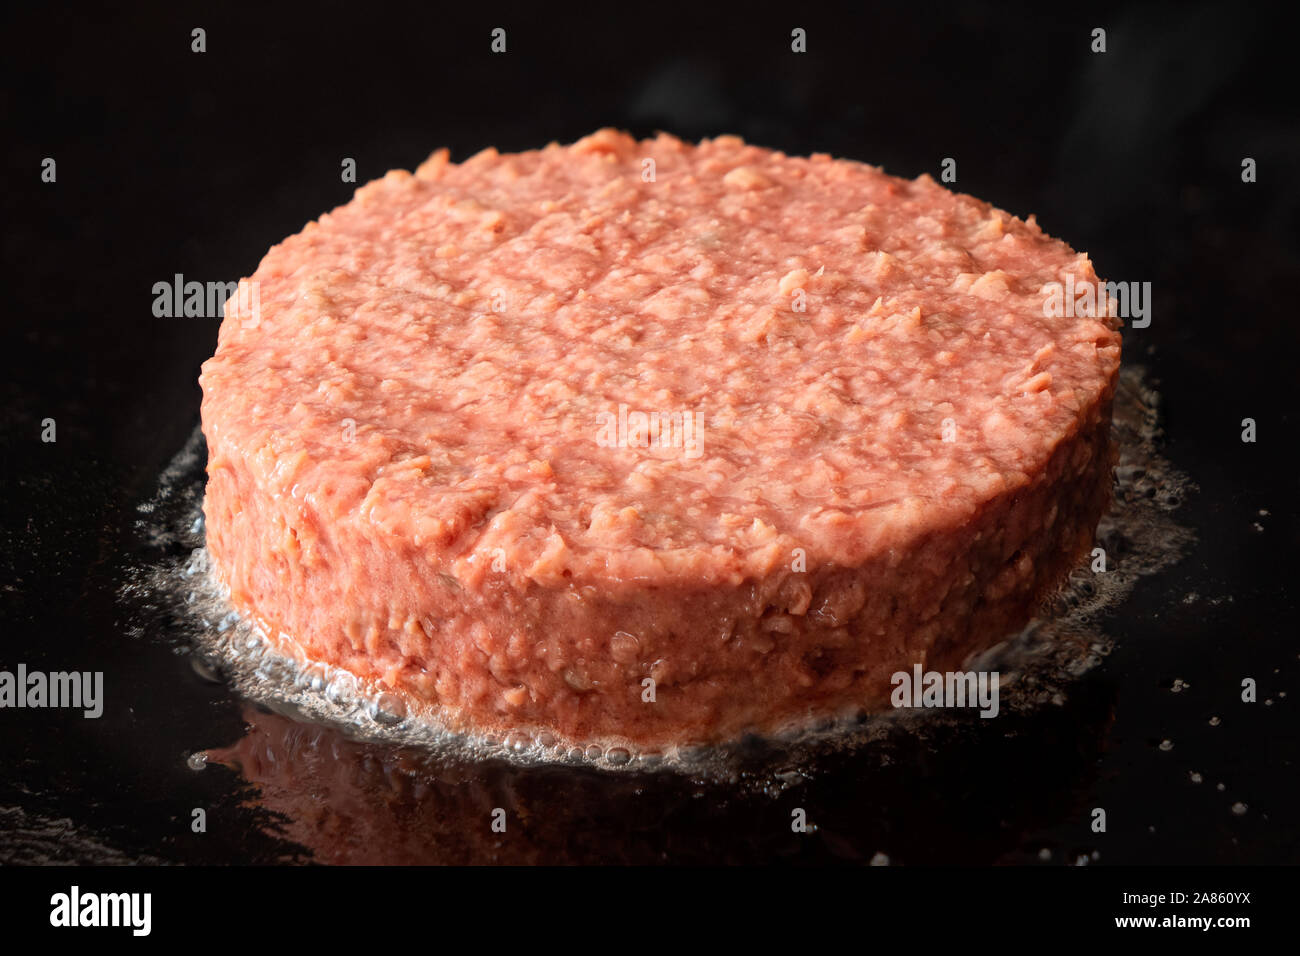 Burger végétarien à base de plantes non cuite patty être cuit sur une grille de fer noir. Banque D'Images